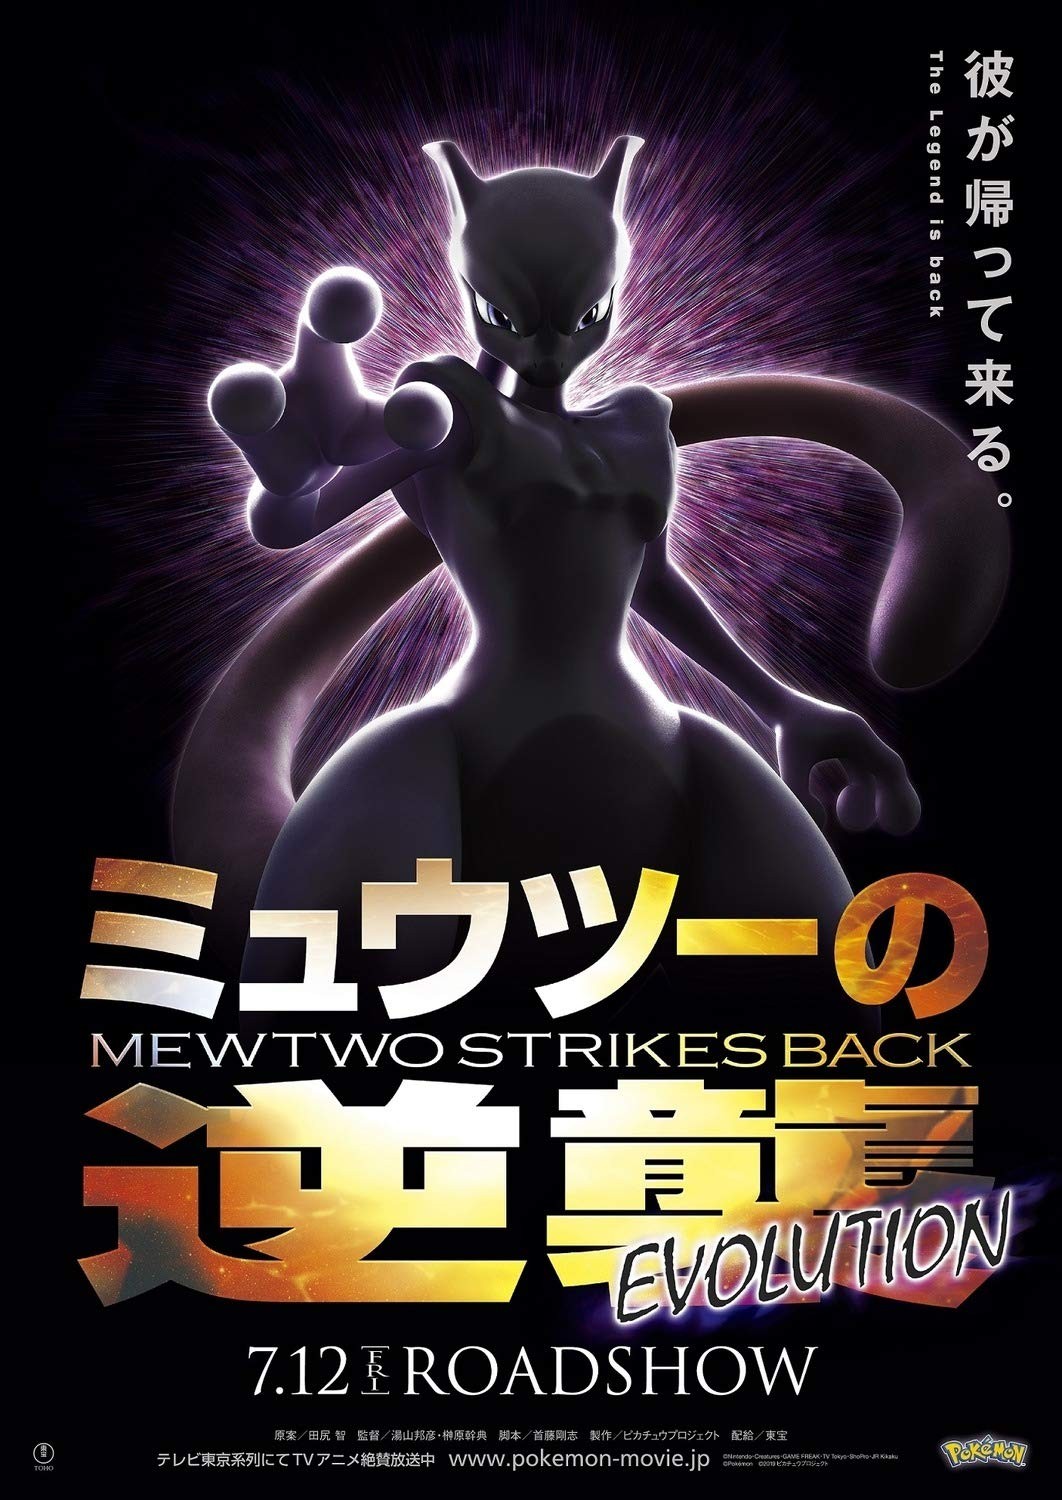 Pokemon: Mewtwo Strikes Back - Evolution Review